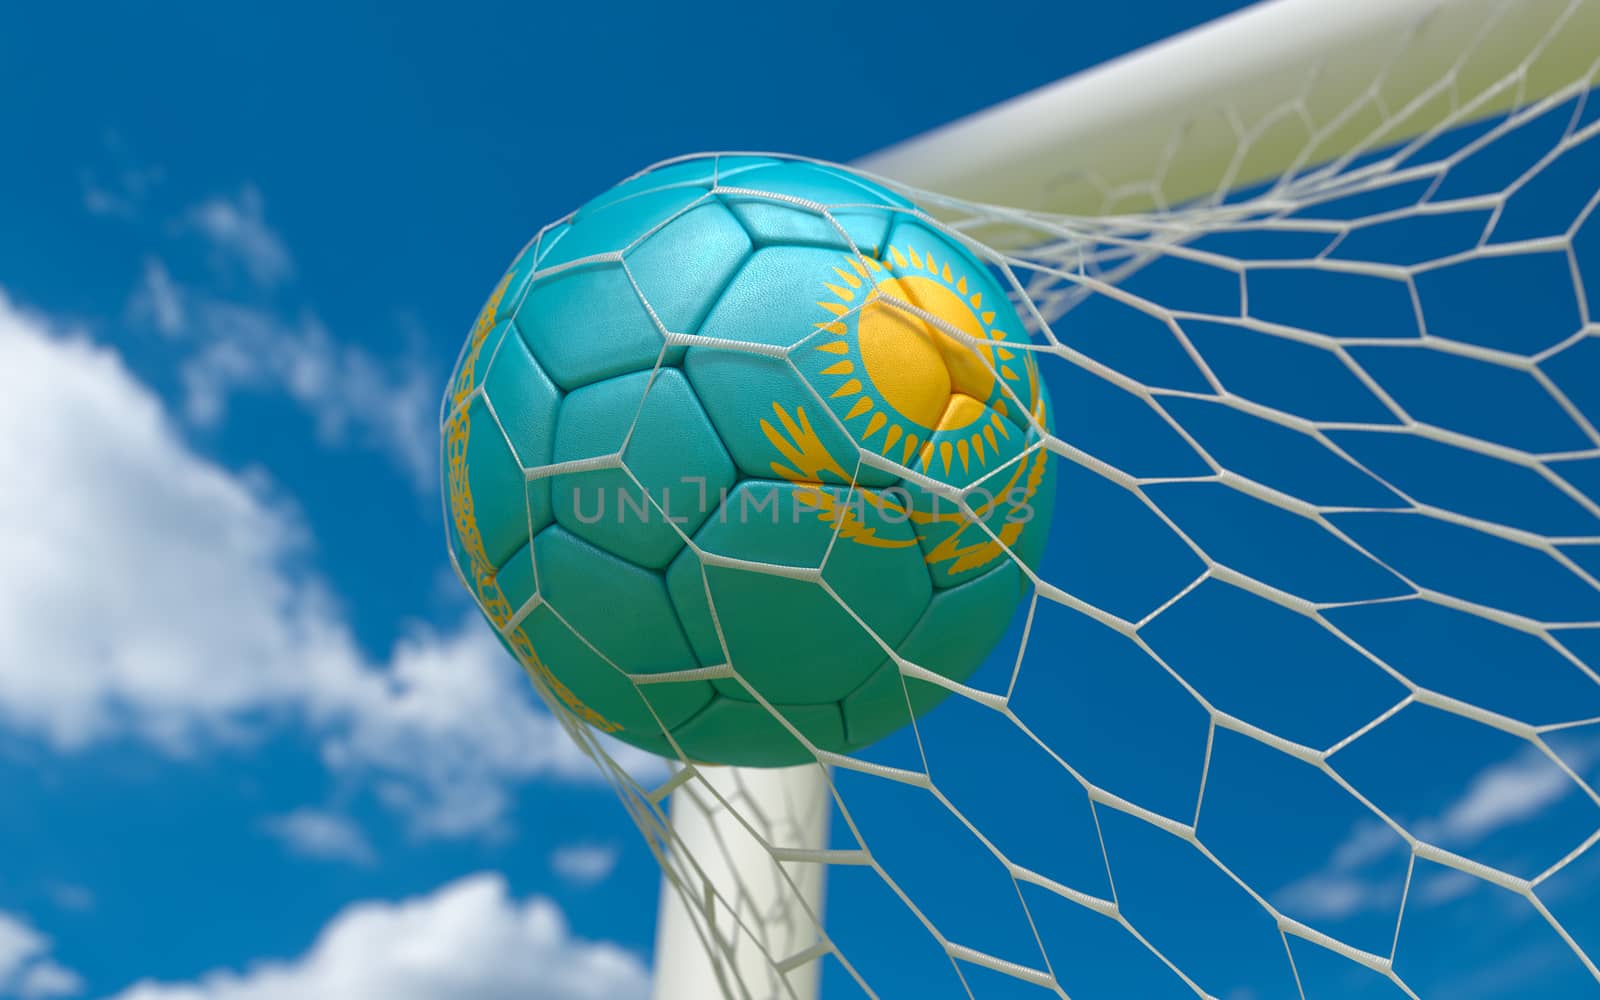 Flag of Kazakhstan and soccer ball in goal net by Barbraford